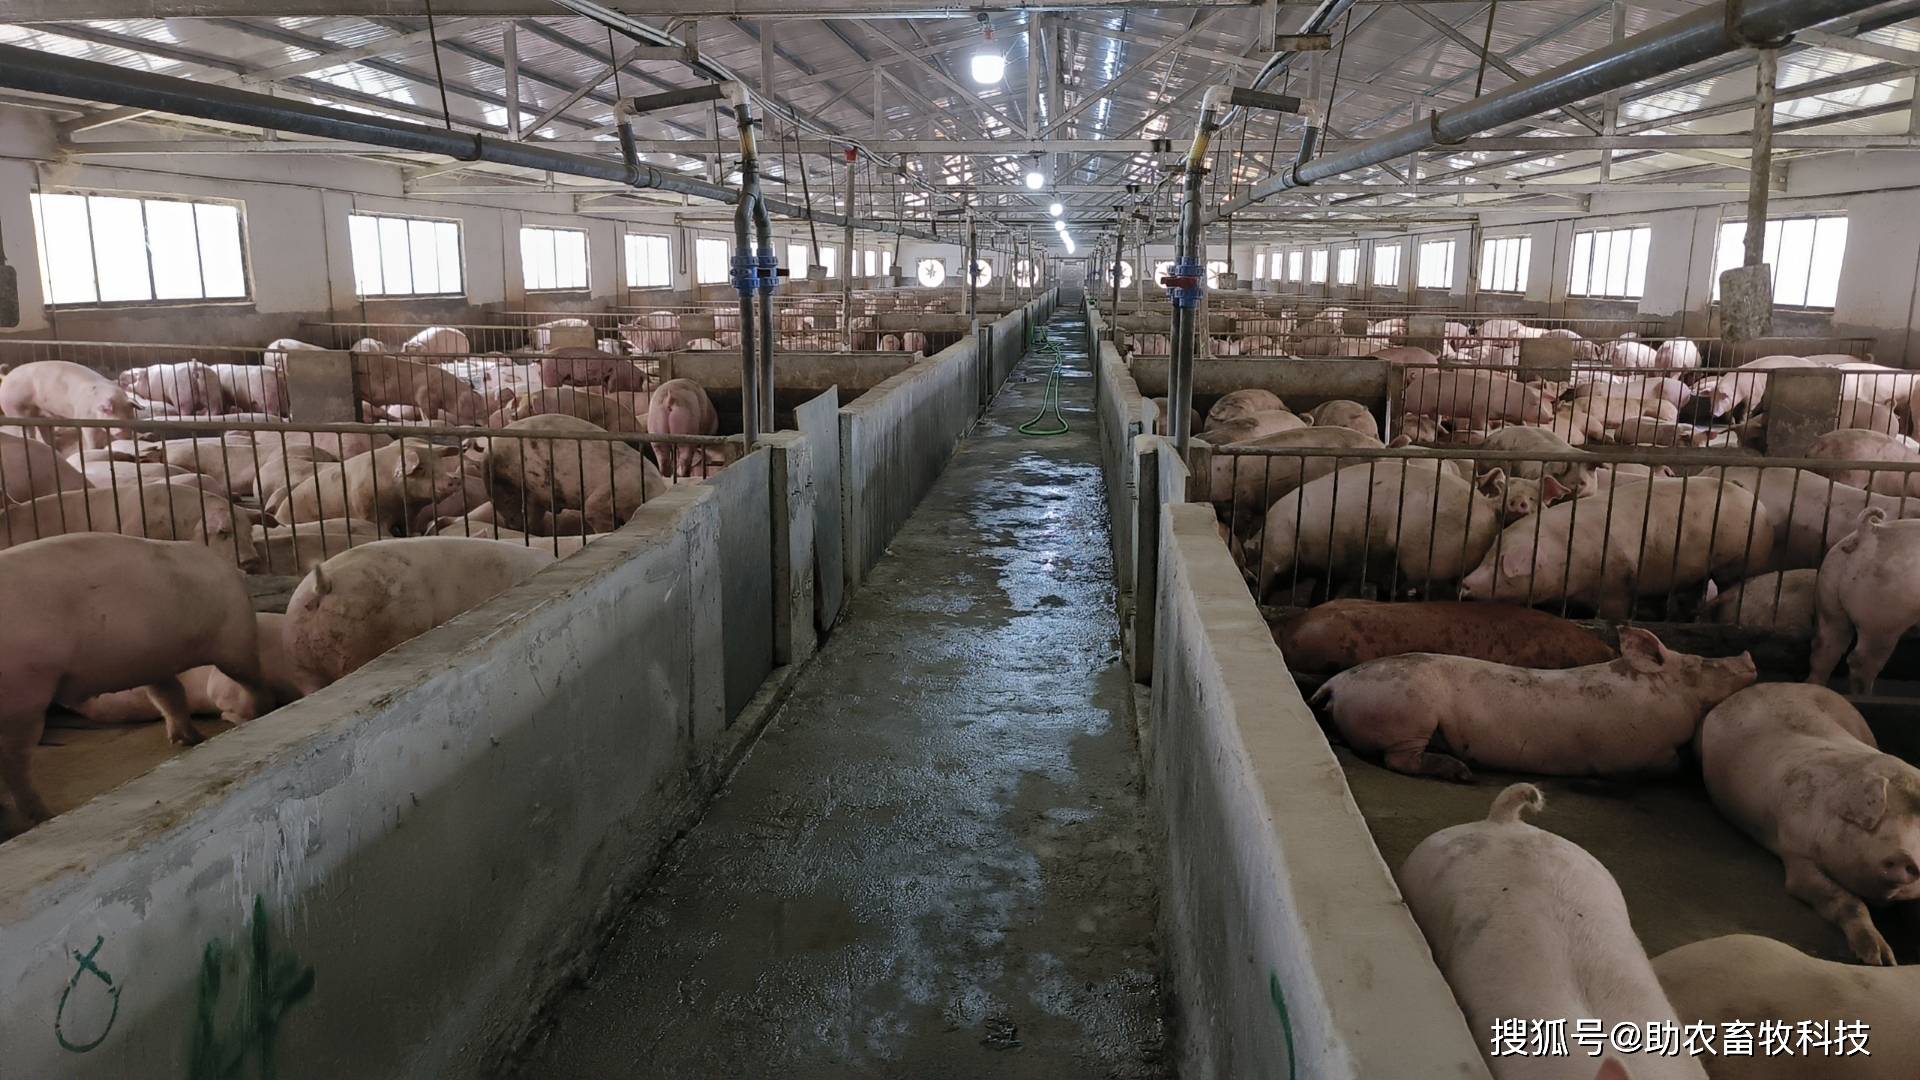 可以进入猪场内部全程运用微生物技术进行现代生态养殖的示范猪场